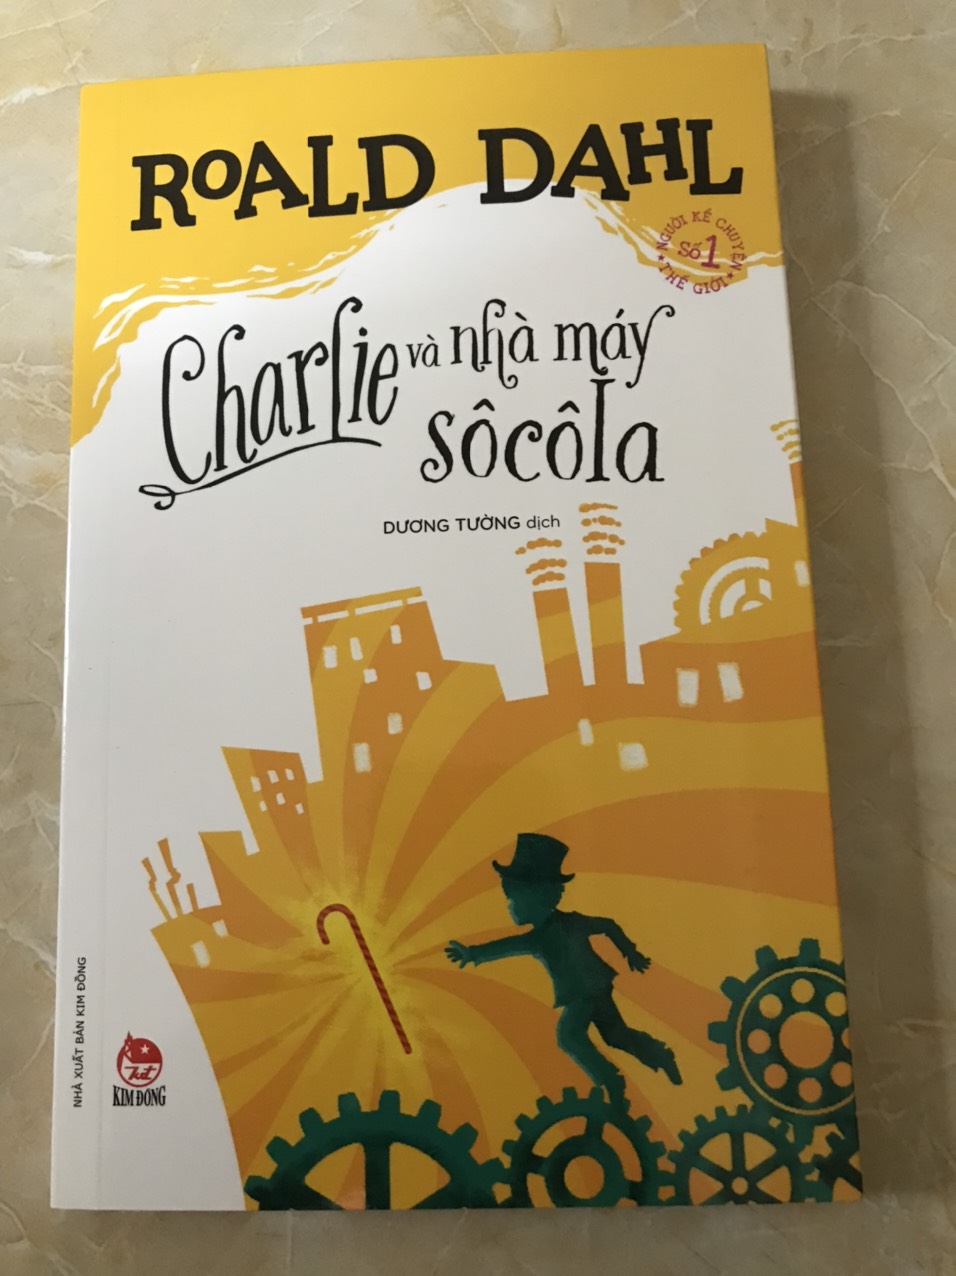 Combo 5 Cuốn: Bộ Sách Của Roald Dahl - Nhà Văn Được Mệnh Danh Là &quot;Người Kể Chuyện Số 1 Thế Giới&quot;: Chú rùa Alfie; Bác Fox tuyệt vời; Danny, nhà vô địch thế giới; Charlie và nhà máy Socola; Charlie và chiếc thang bằng kính;